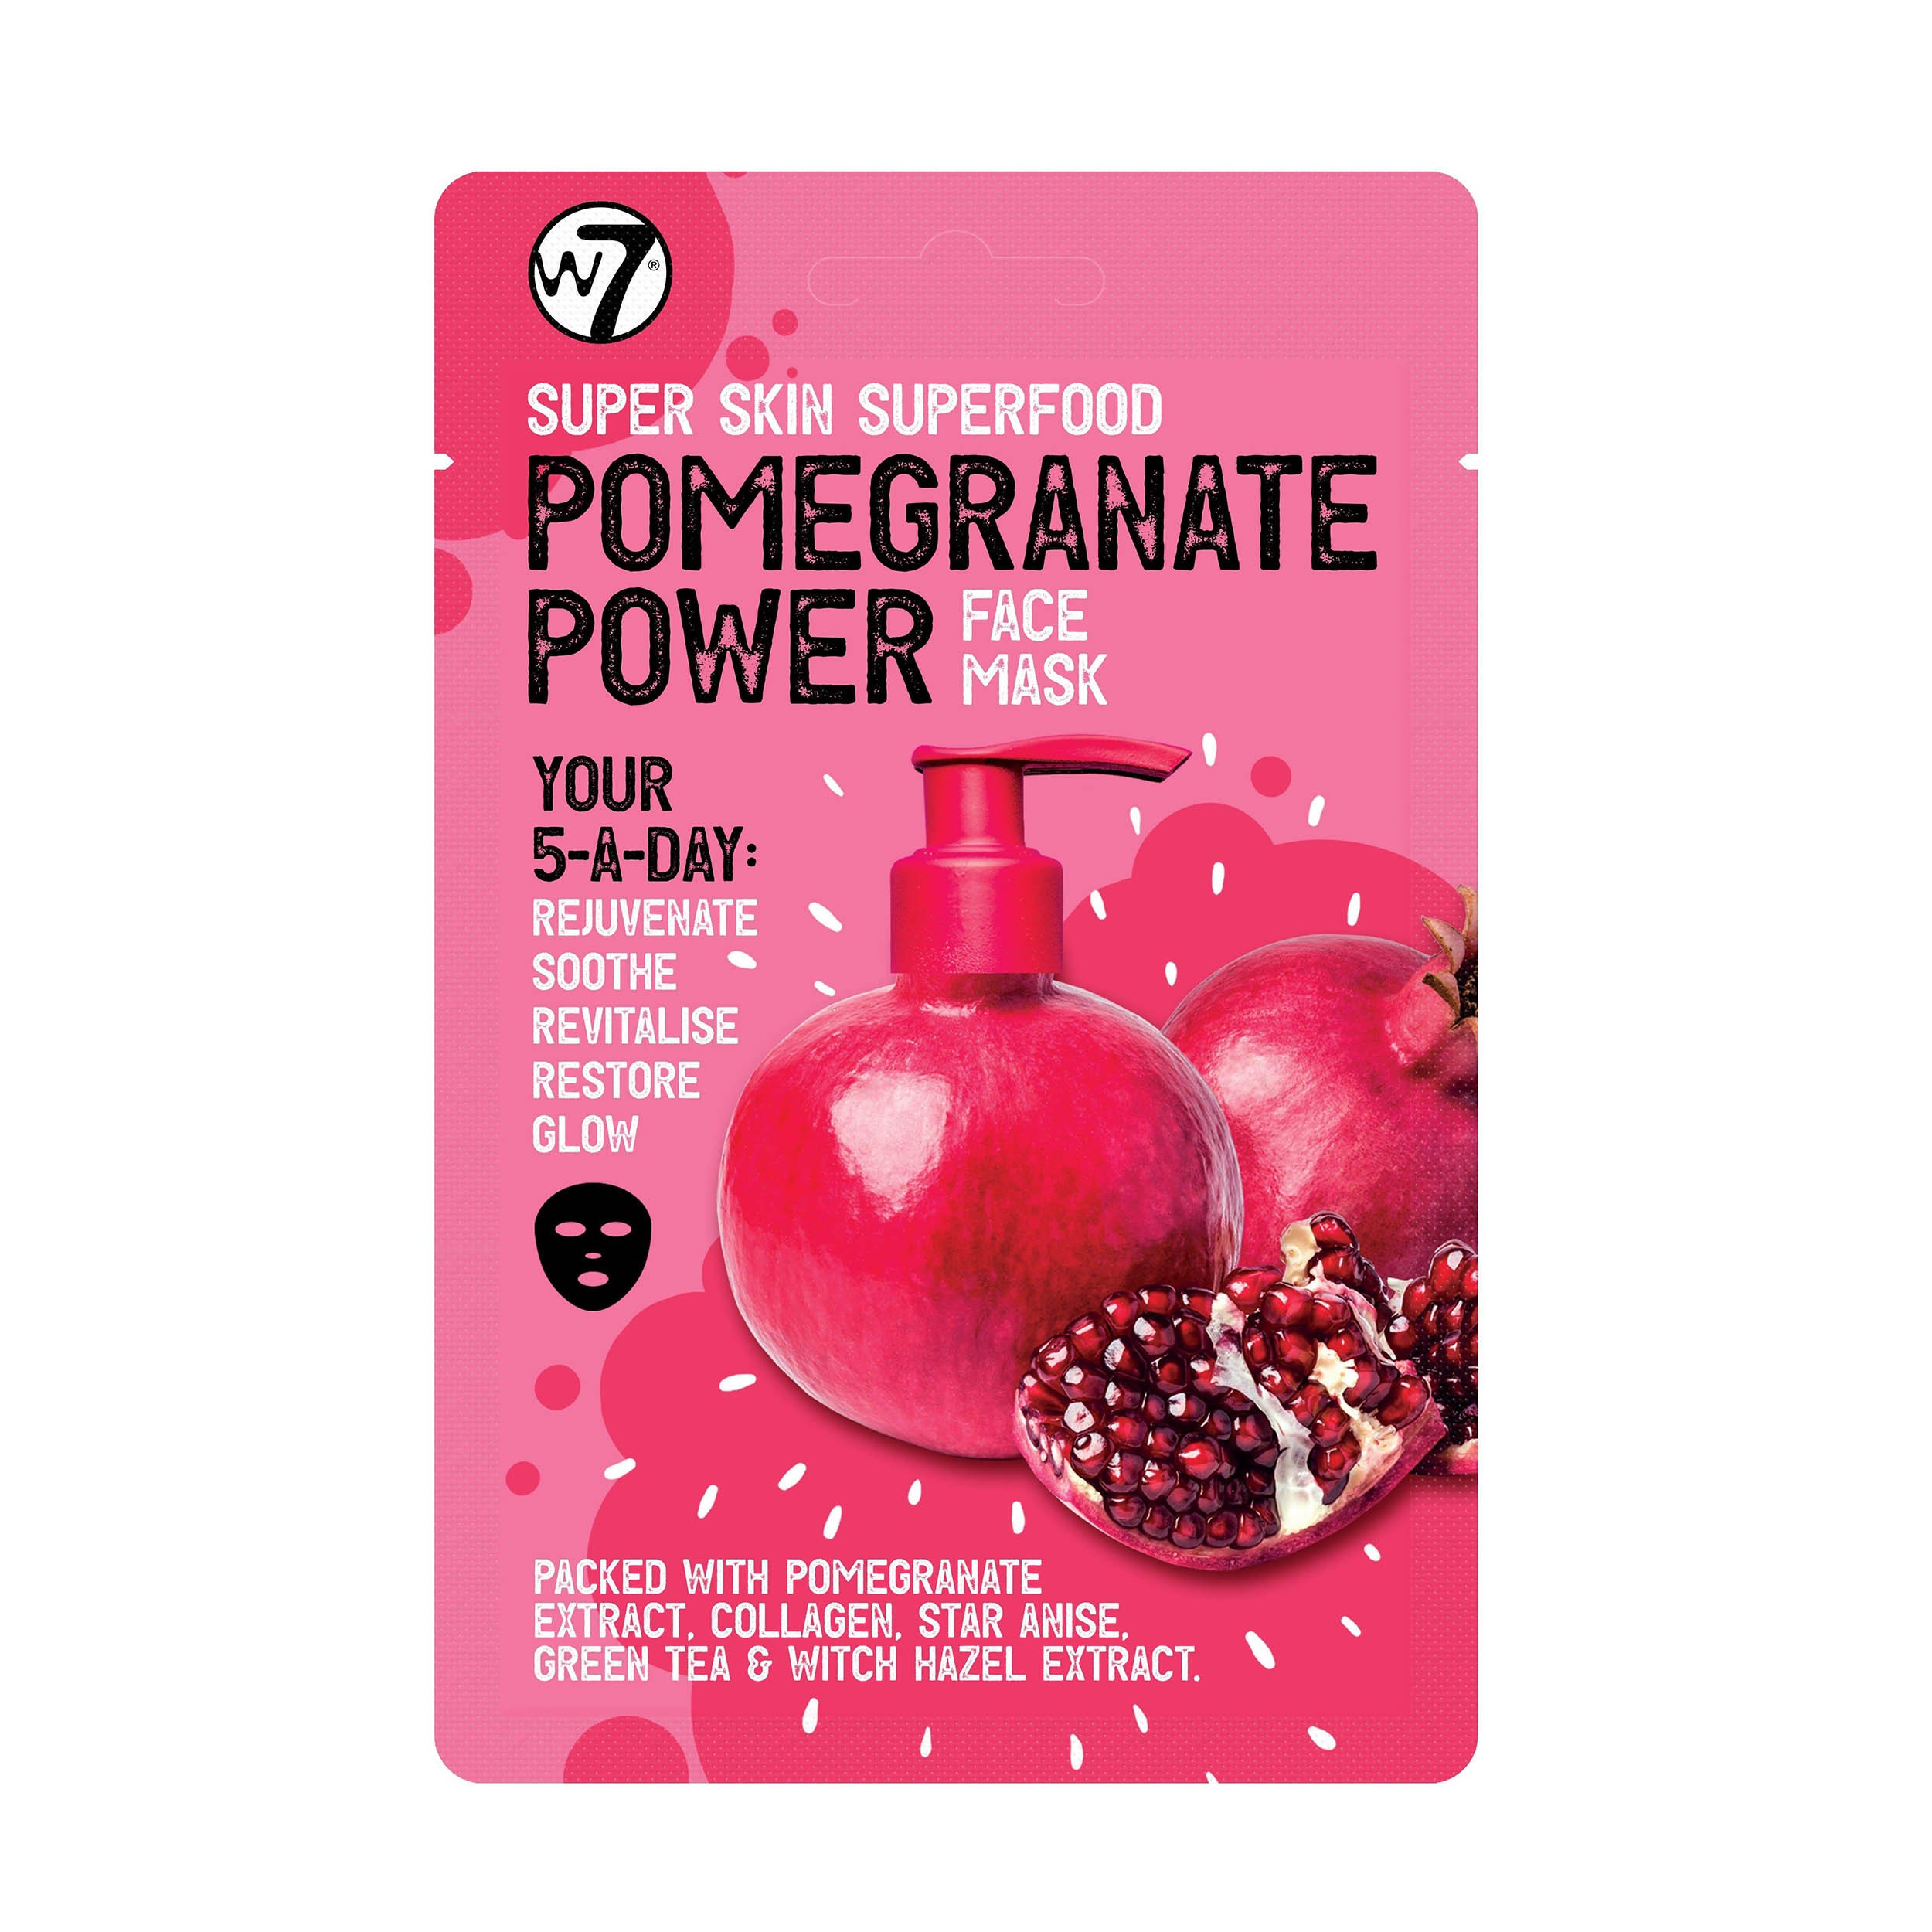 Gesichtsmaske - Super Skin Superfood Face Mask - Pomegranate Power